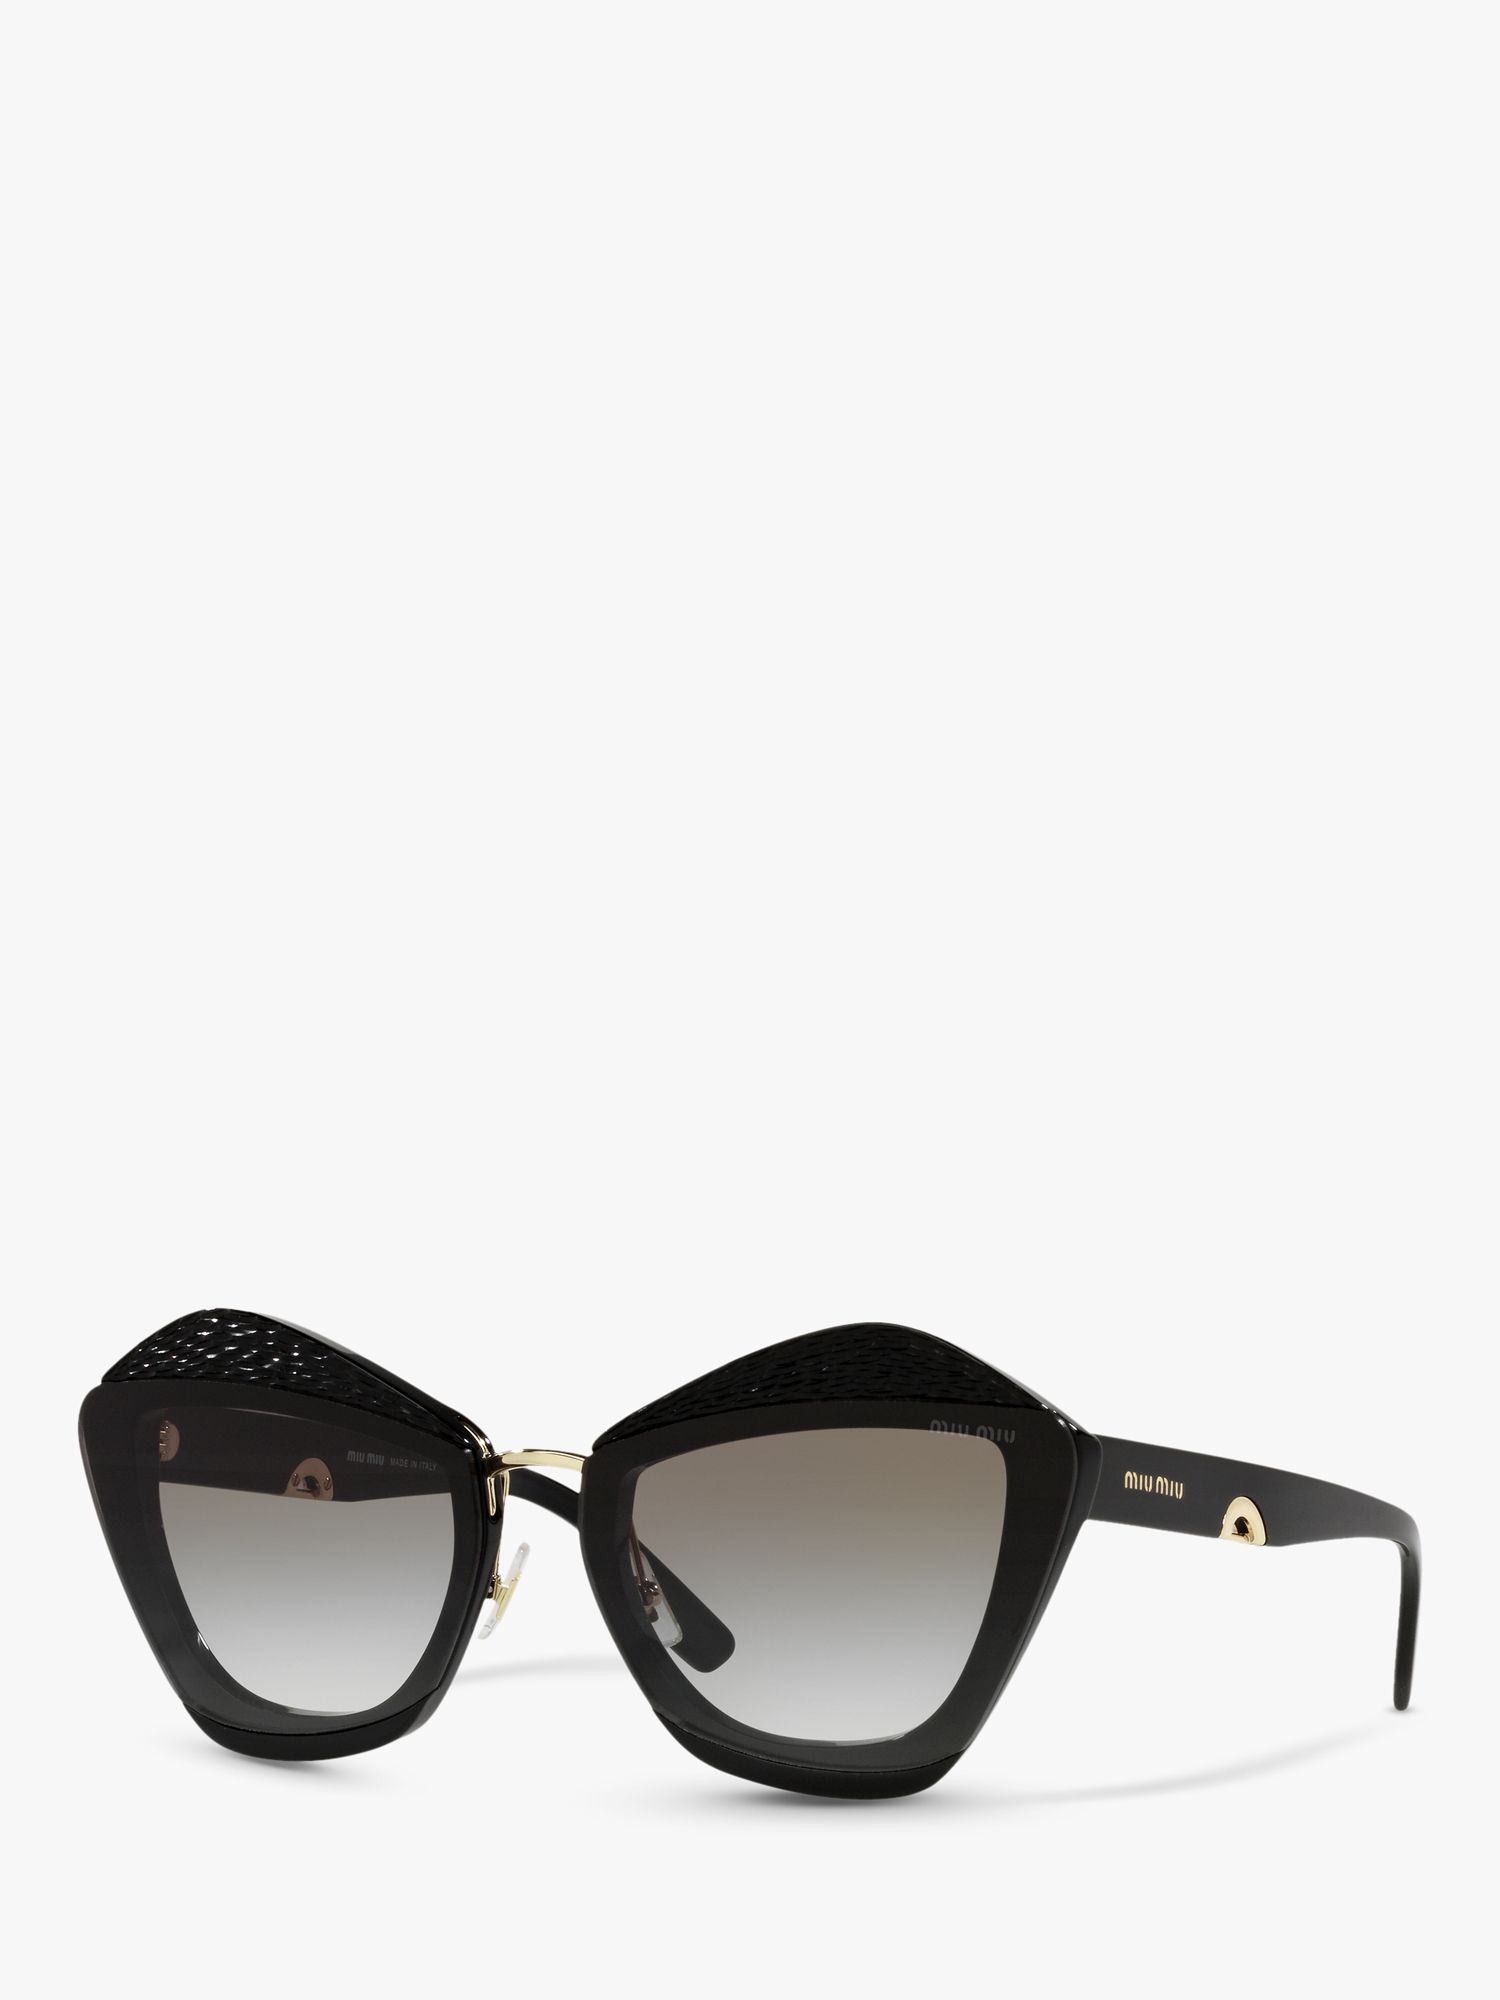 Miu Miu MU 01XS Women's Butterfly Sunglasses, Black/Grey Gradient at ...